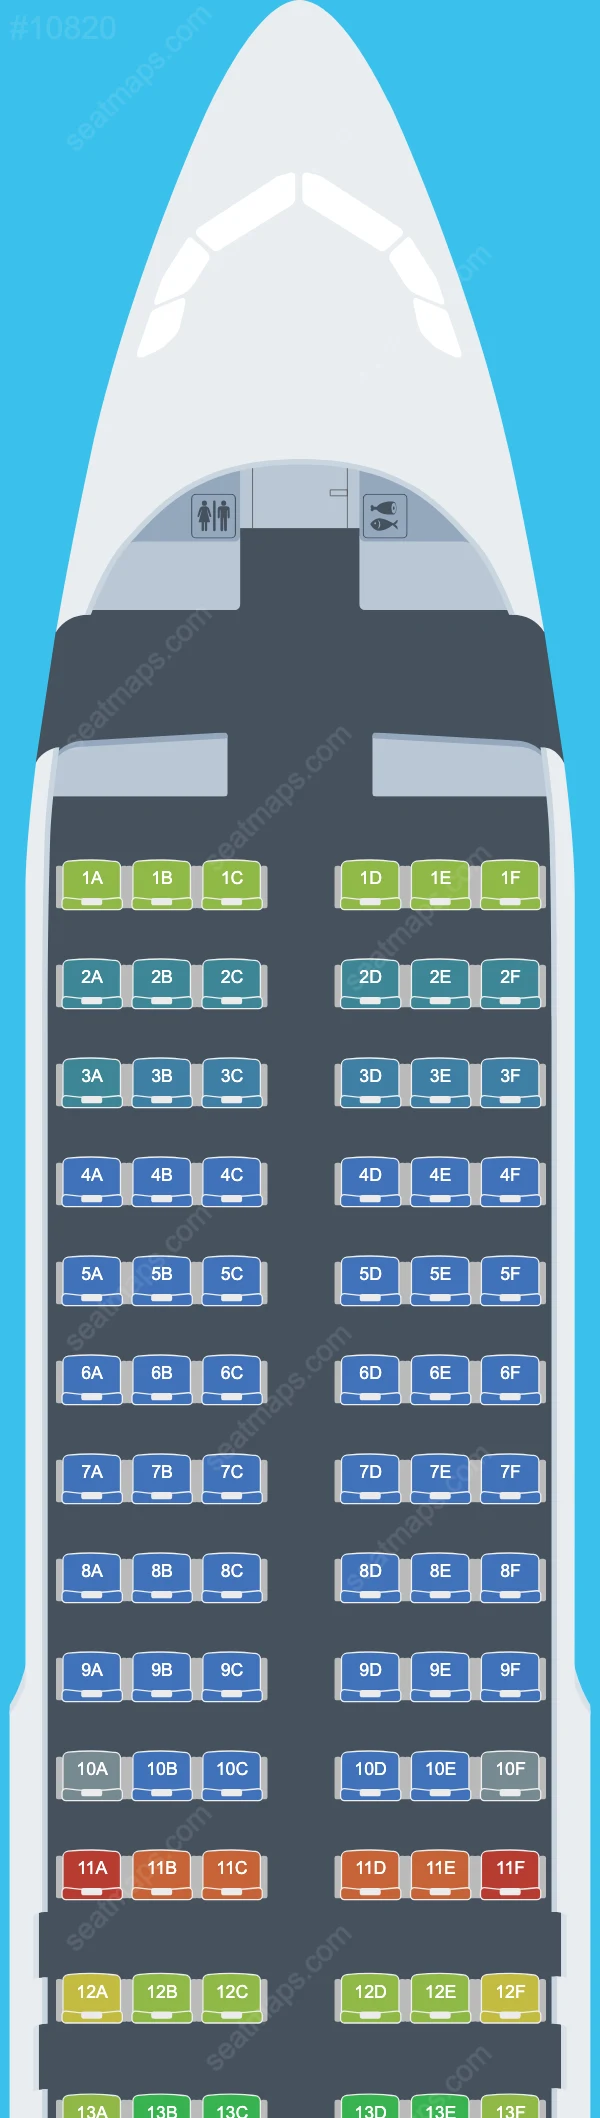 Sky Airline Peru Airbus A320 Seat Maps A320-200neo